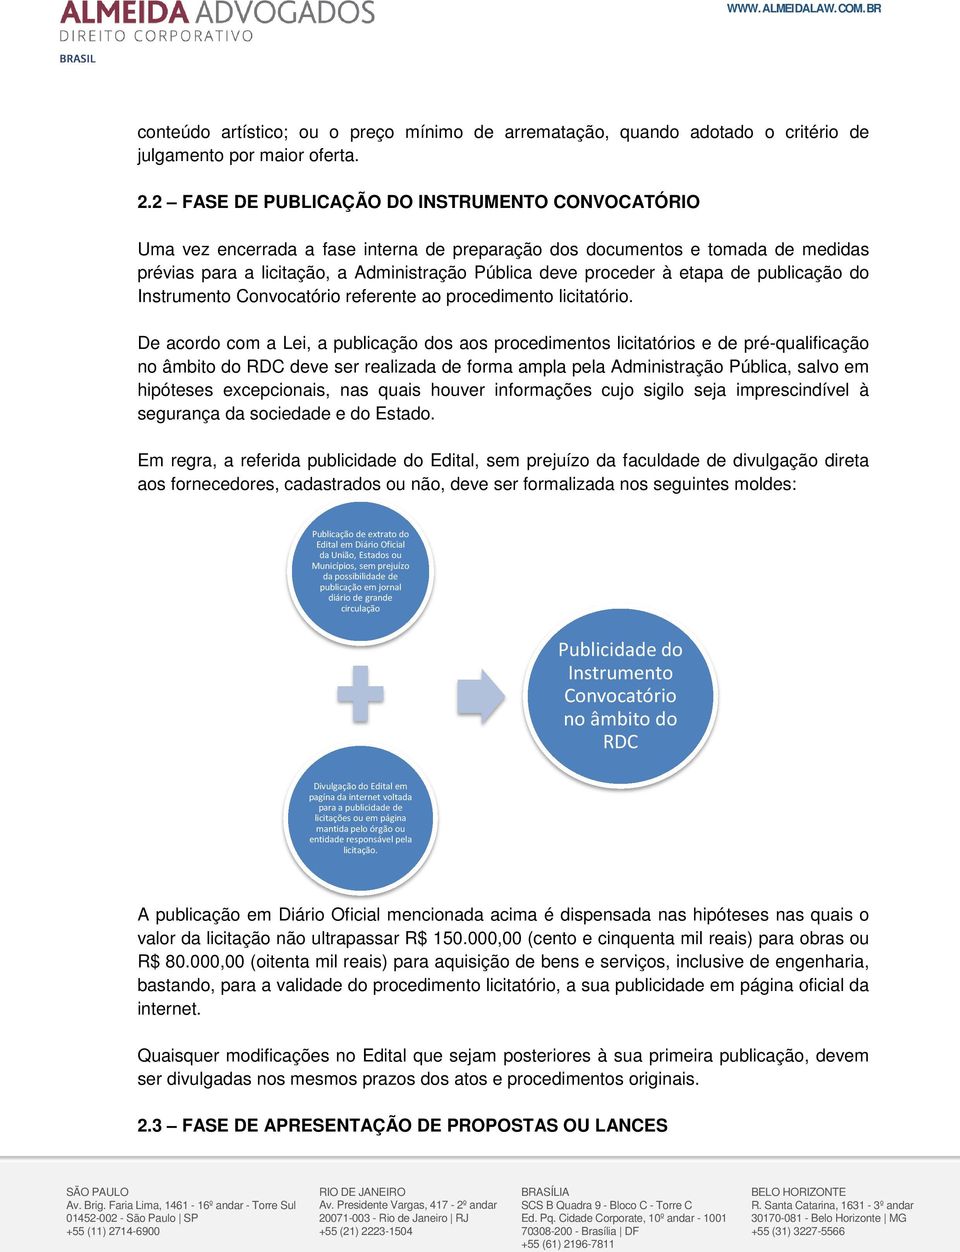 etapa de publicação do Instrumento Convocatório referente ao procedimento licitatório.